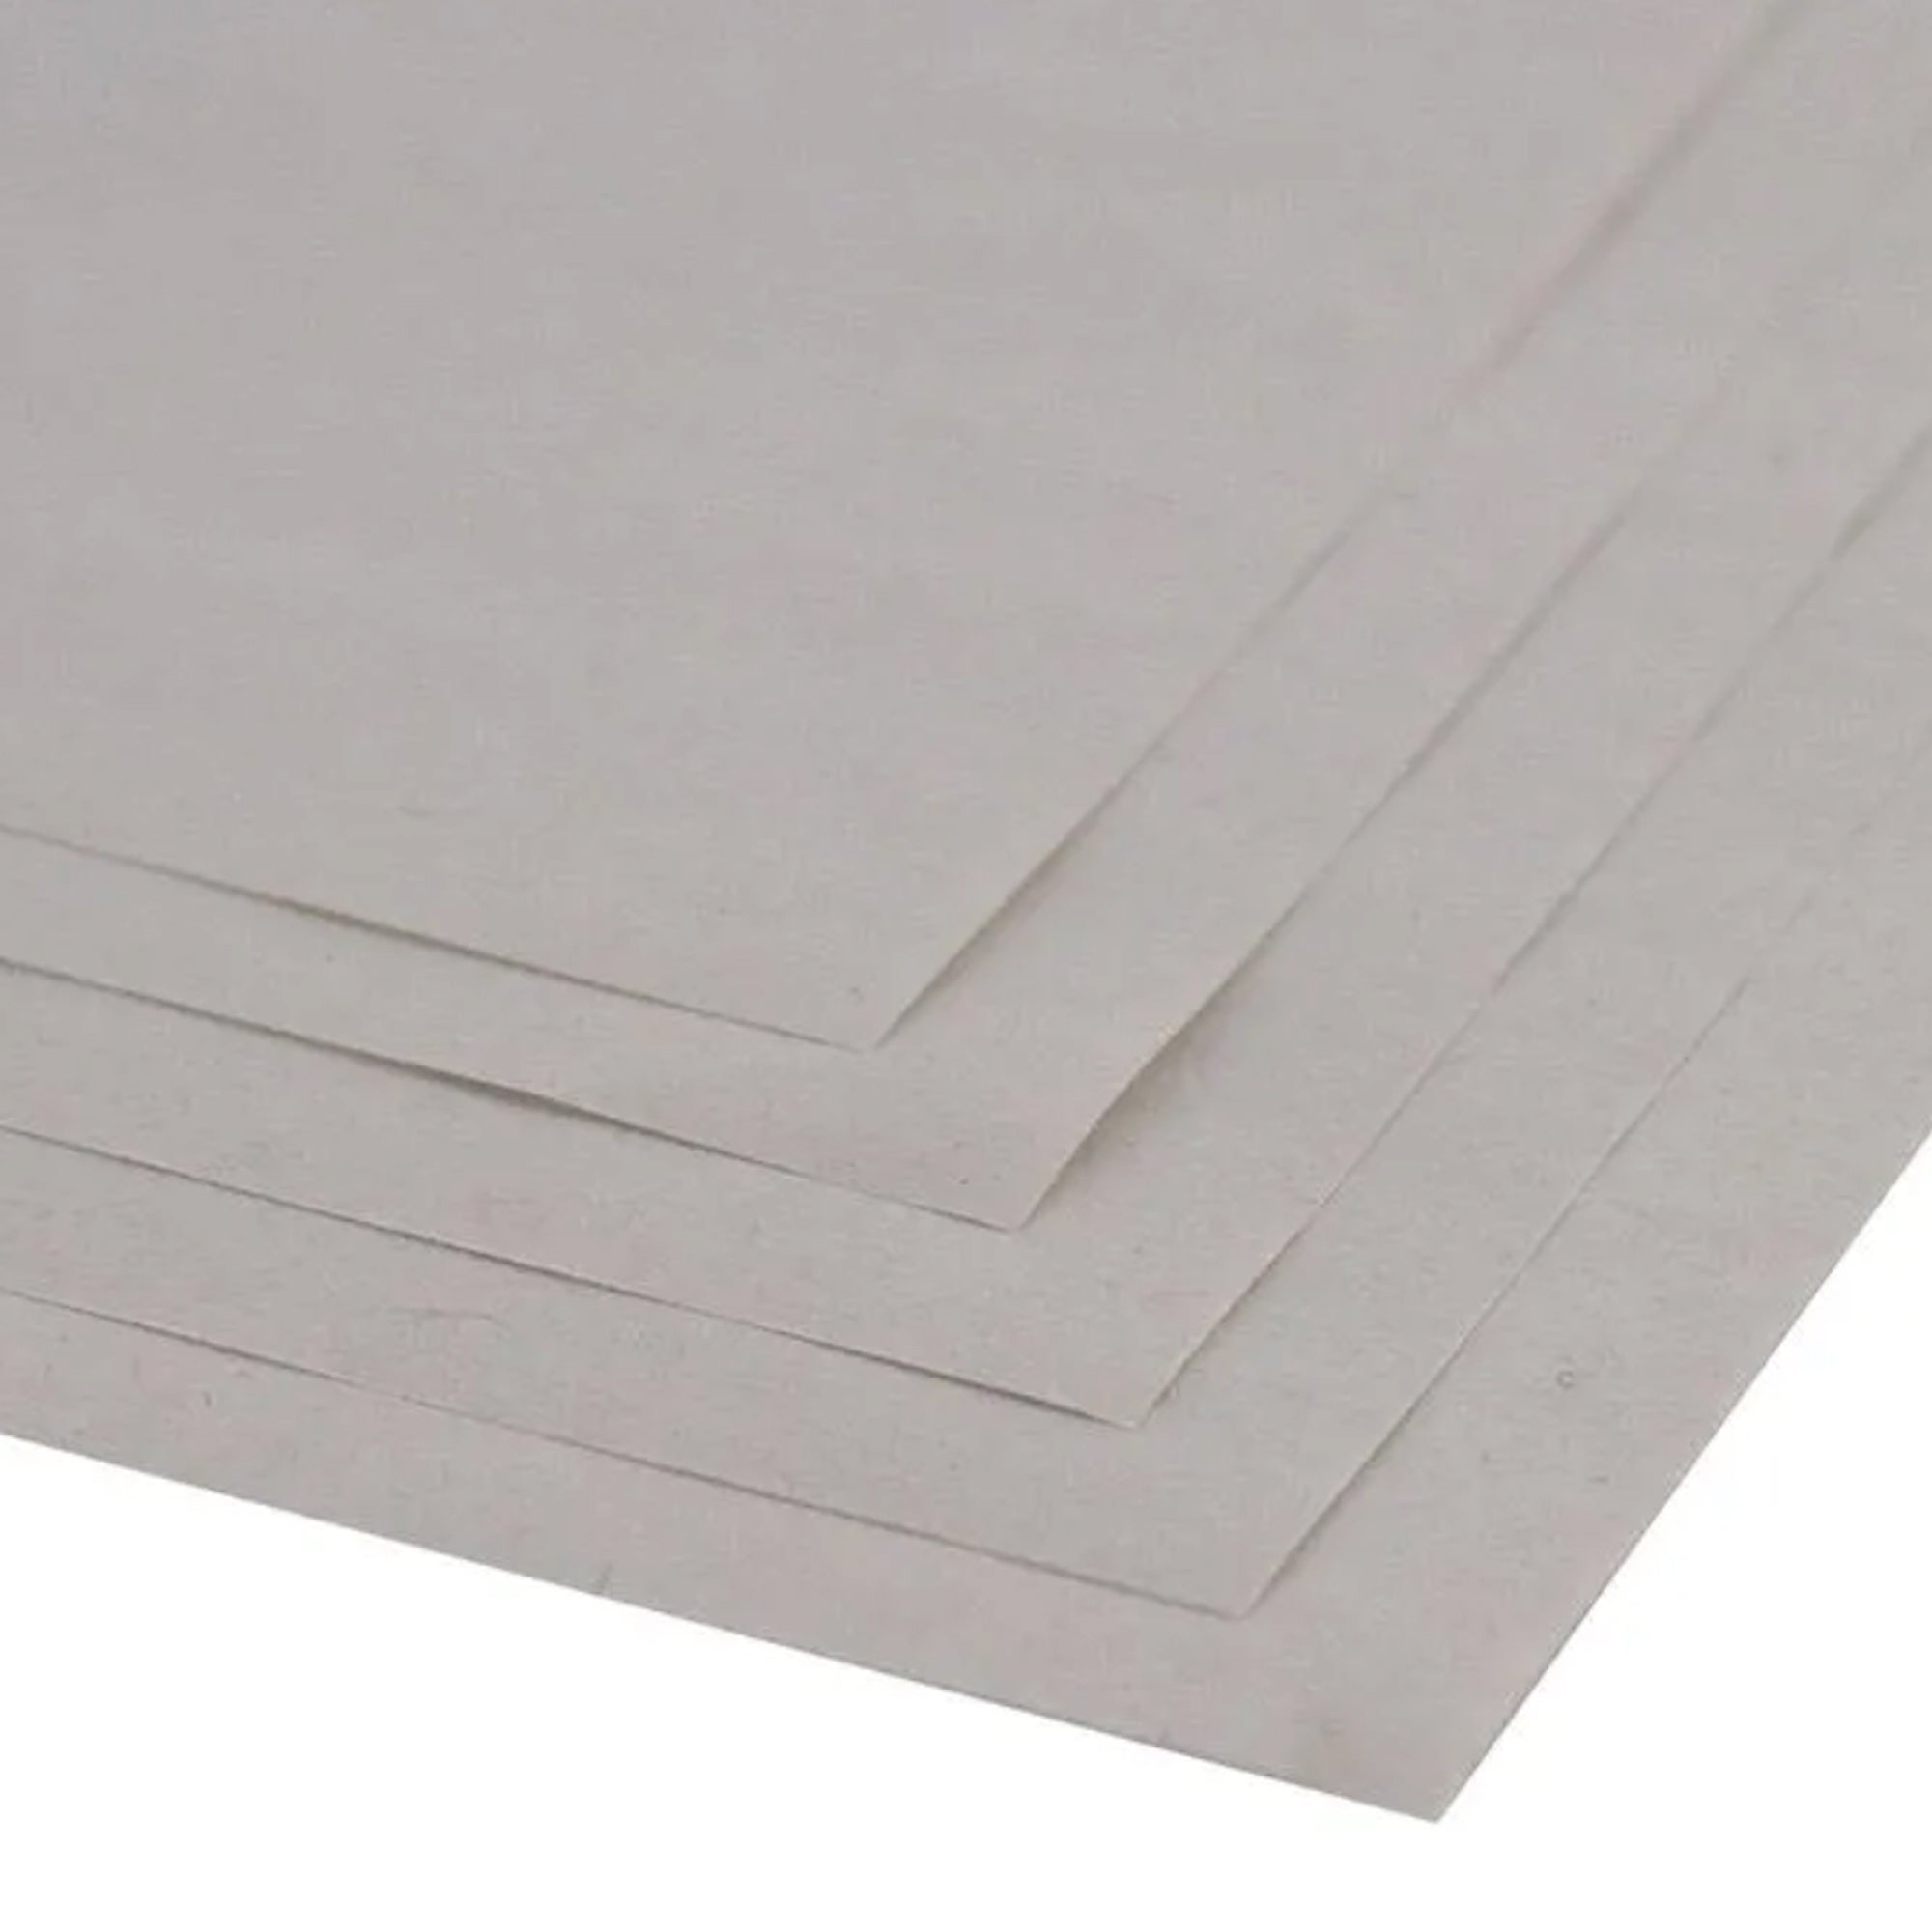 Seawhite A2+ Newsprint - 48gsm - 500 Sheet Pack